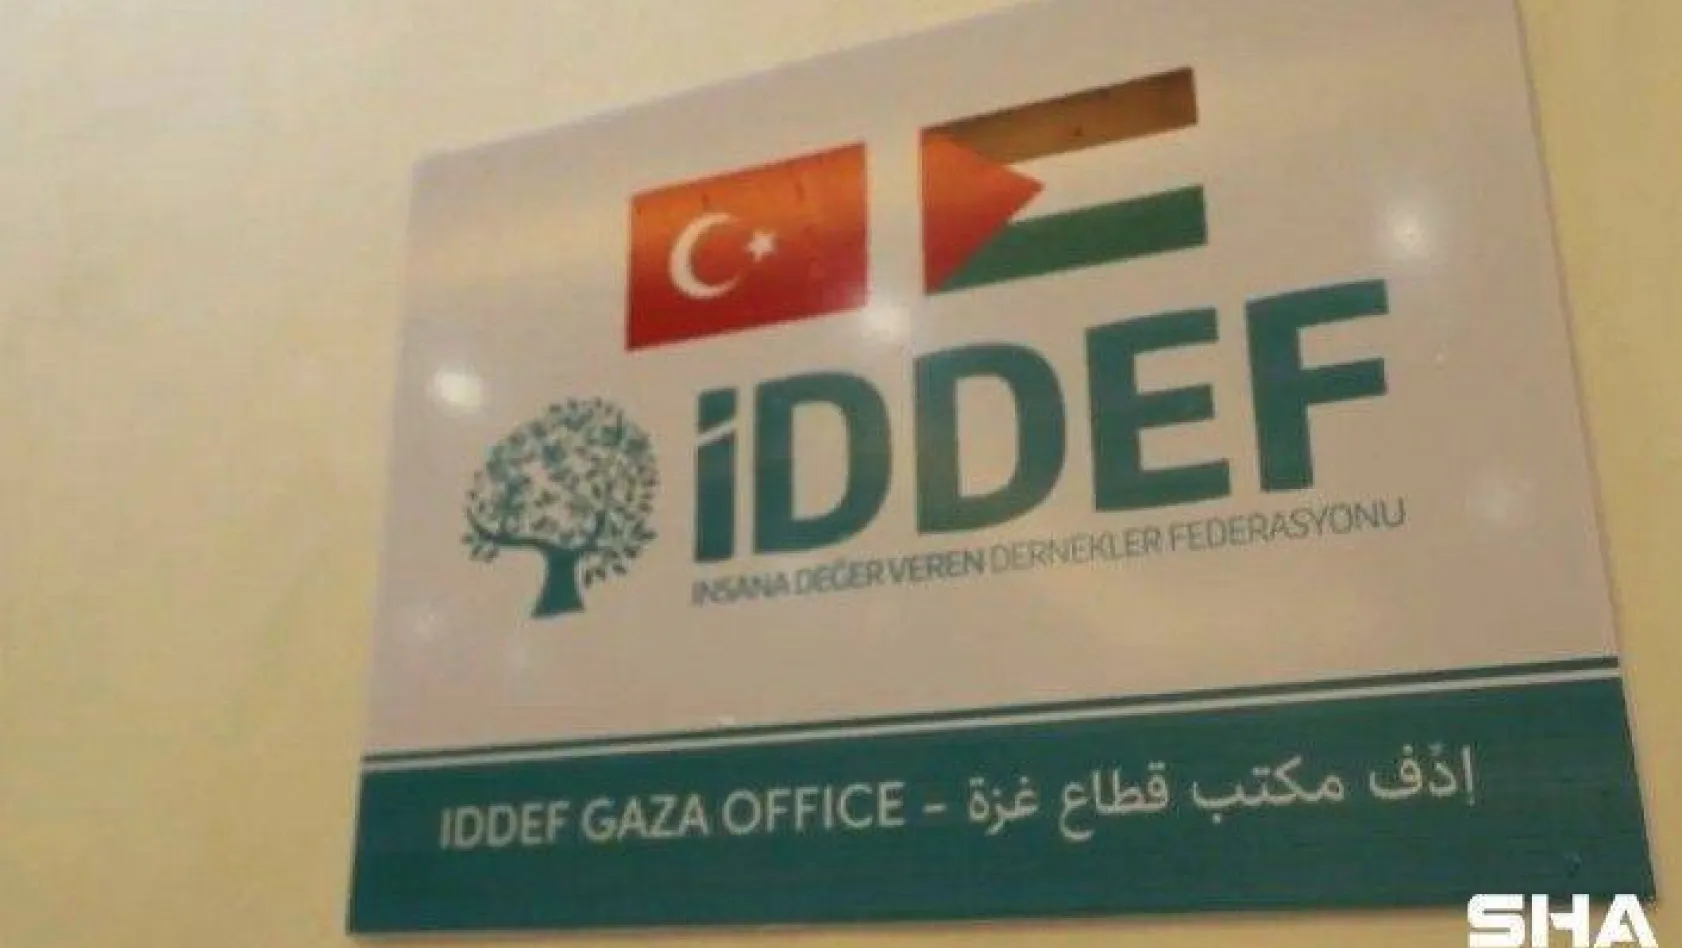 İDDEF'in Gazze ofisi açıldı